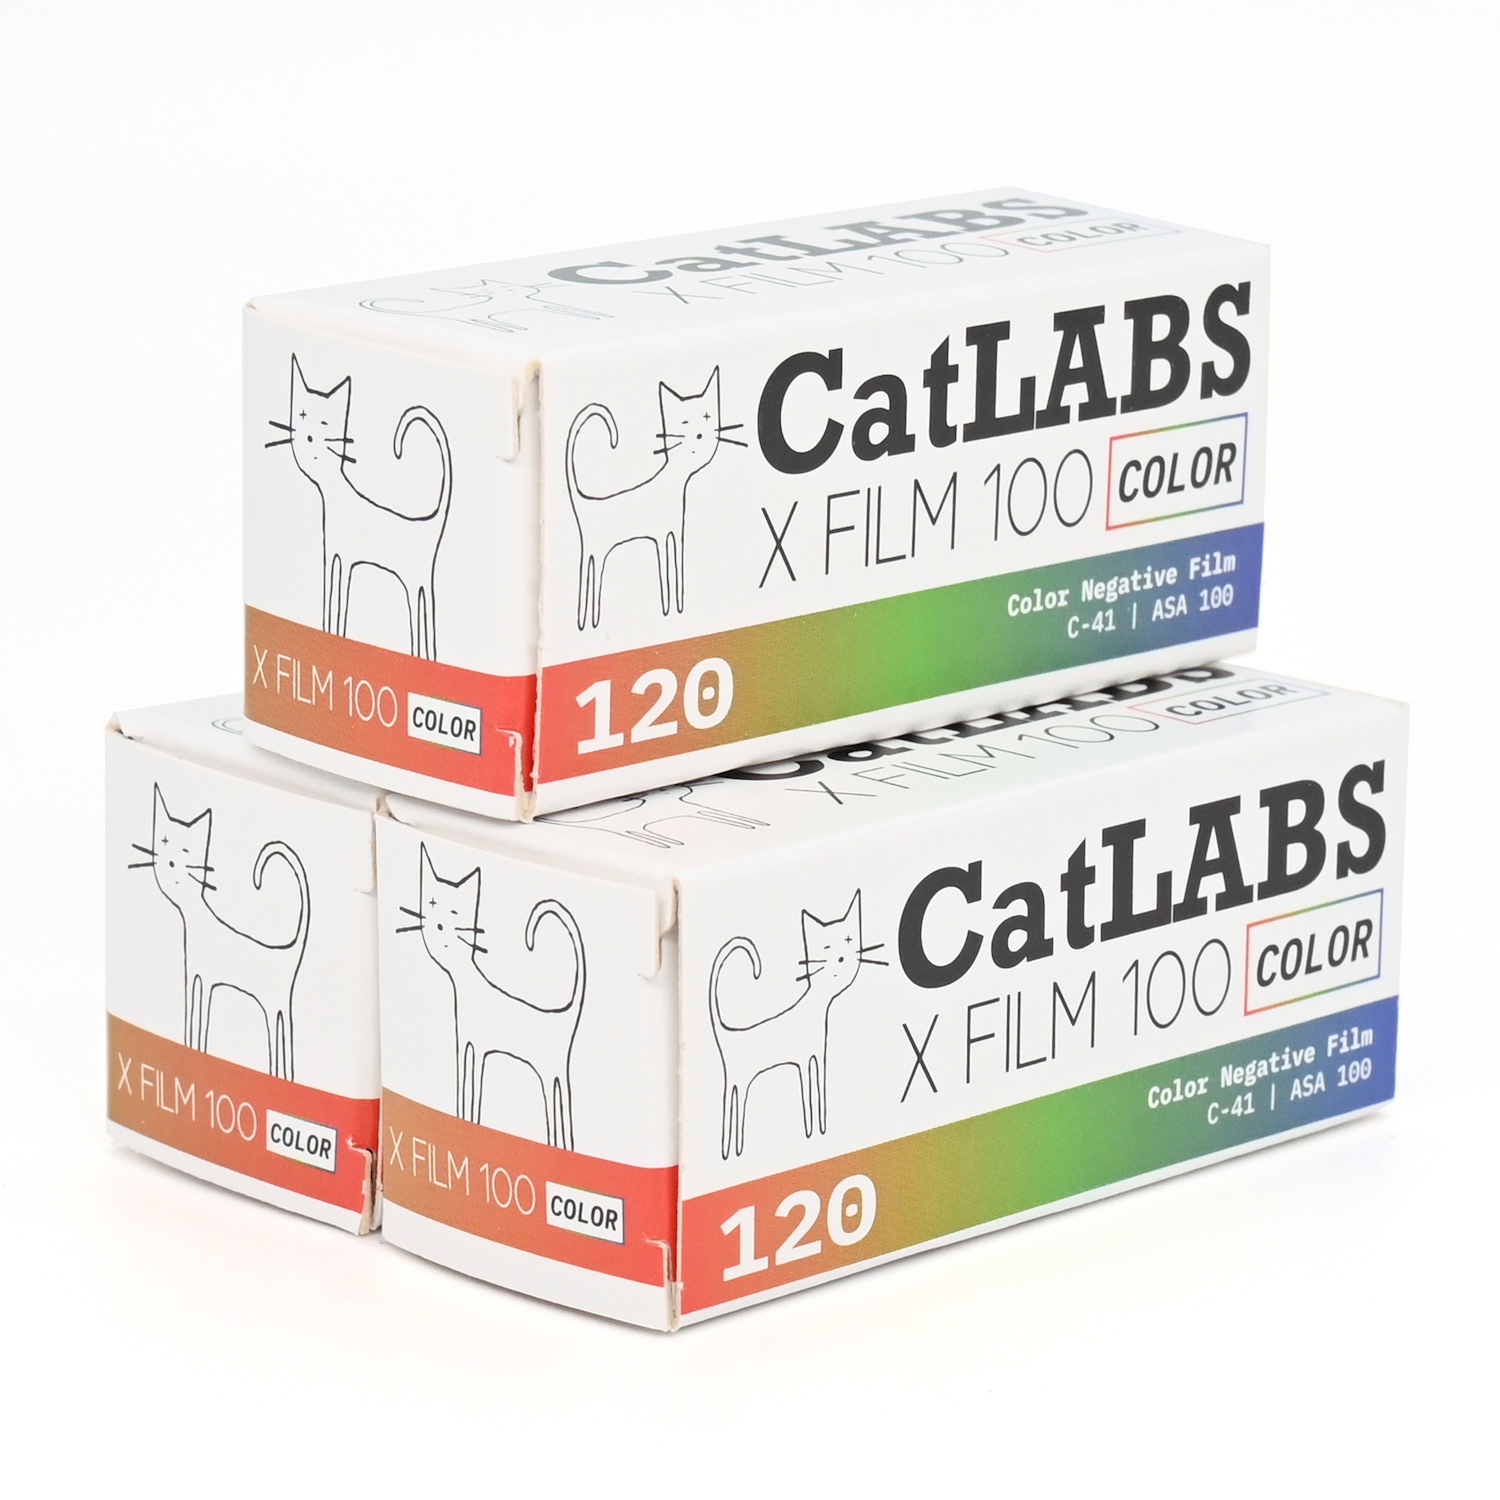 カラーネガフィルム　CatLABS　X FILM 100 COLOR　ブローニー120サイズ　3本組